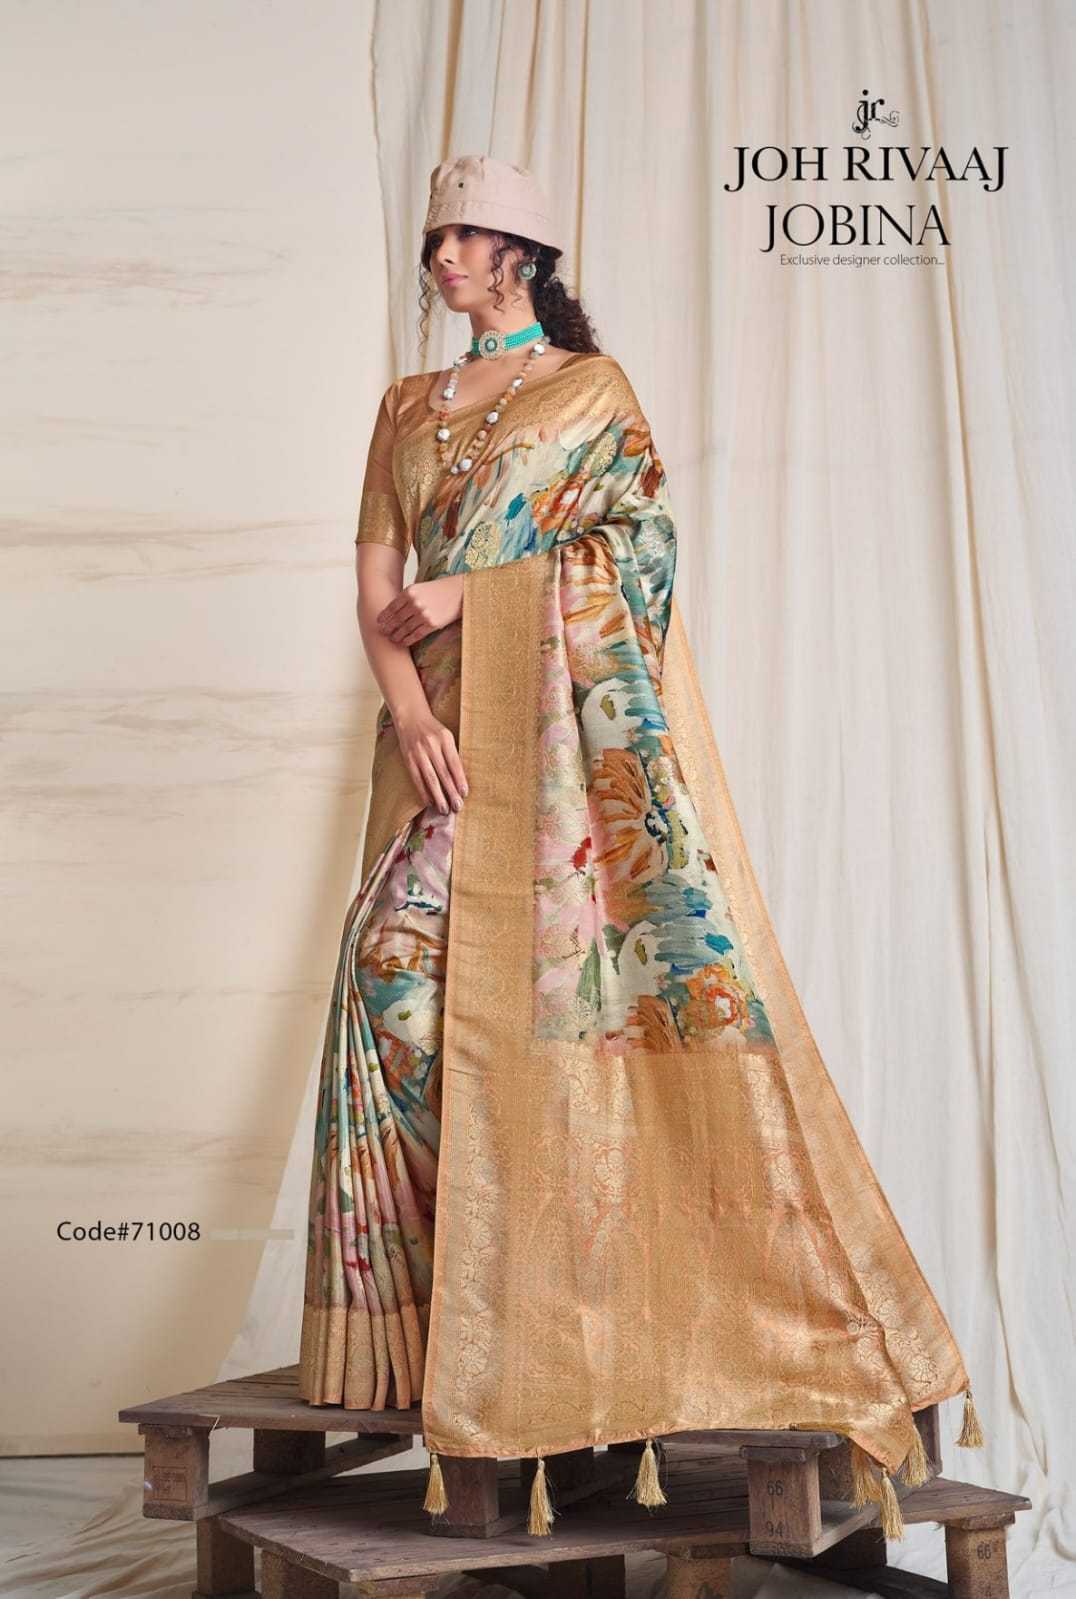 joh rivaaj jobina 71001-71009 fancy party wear saree for occasion catalog